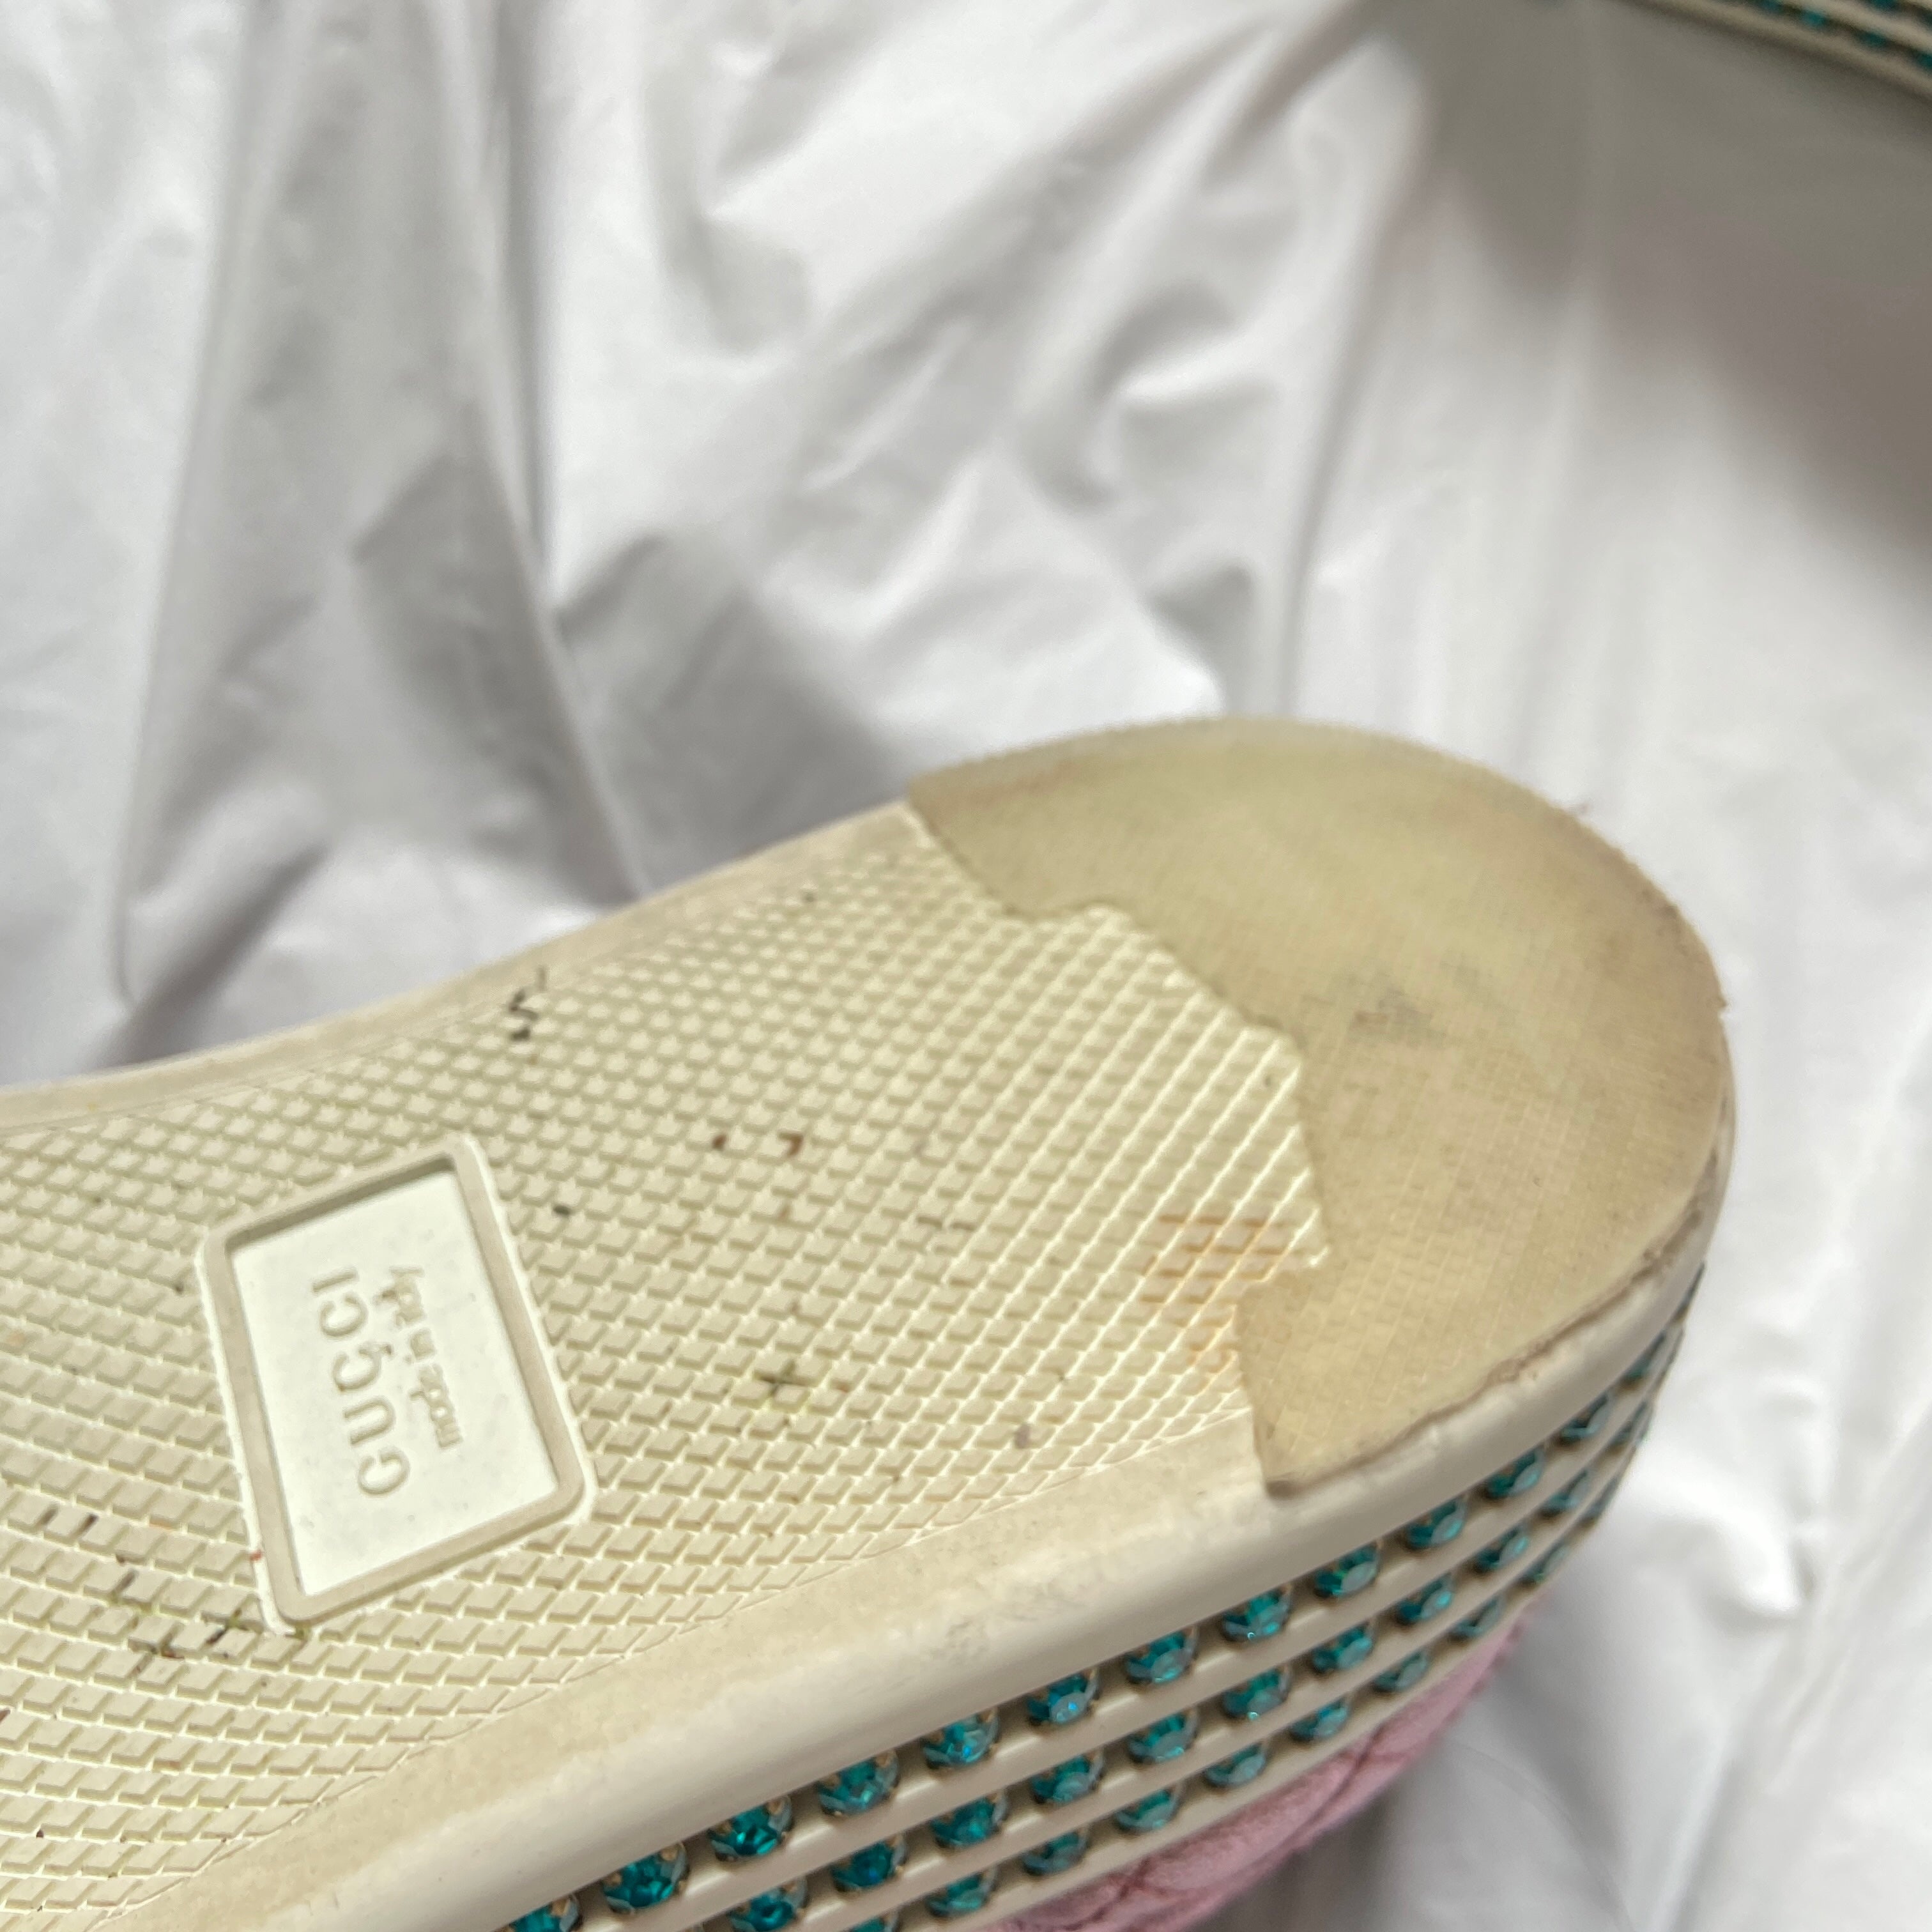 Gucci Swarovski crystal embellished pink platform ace sneaker 37.5 - 11